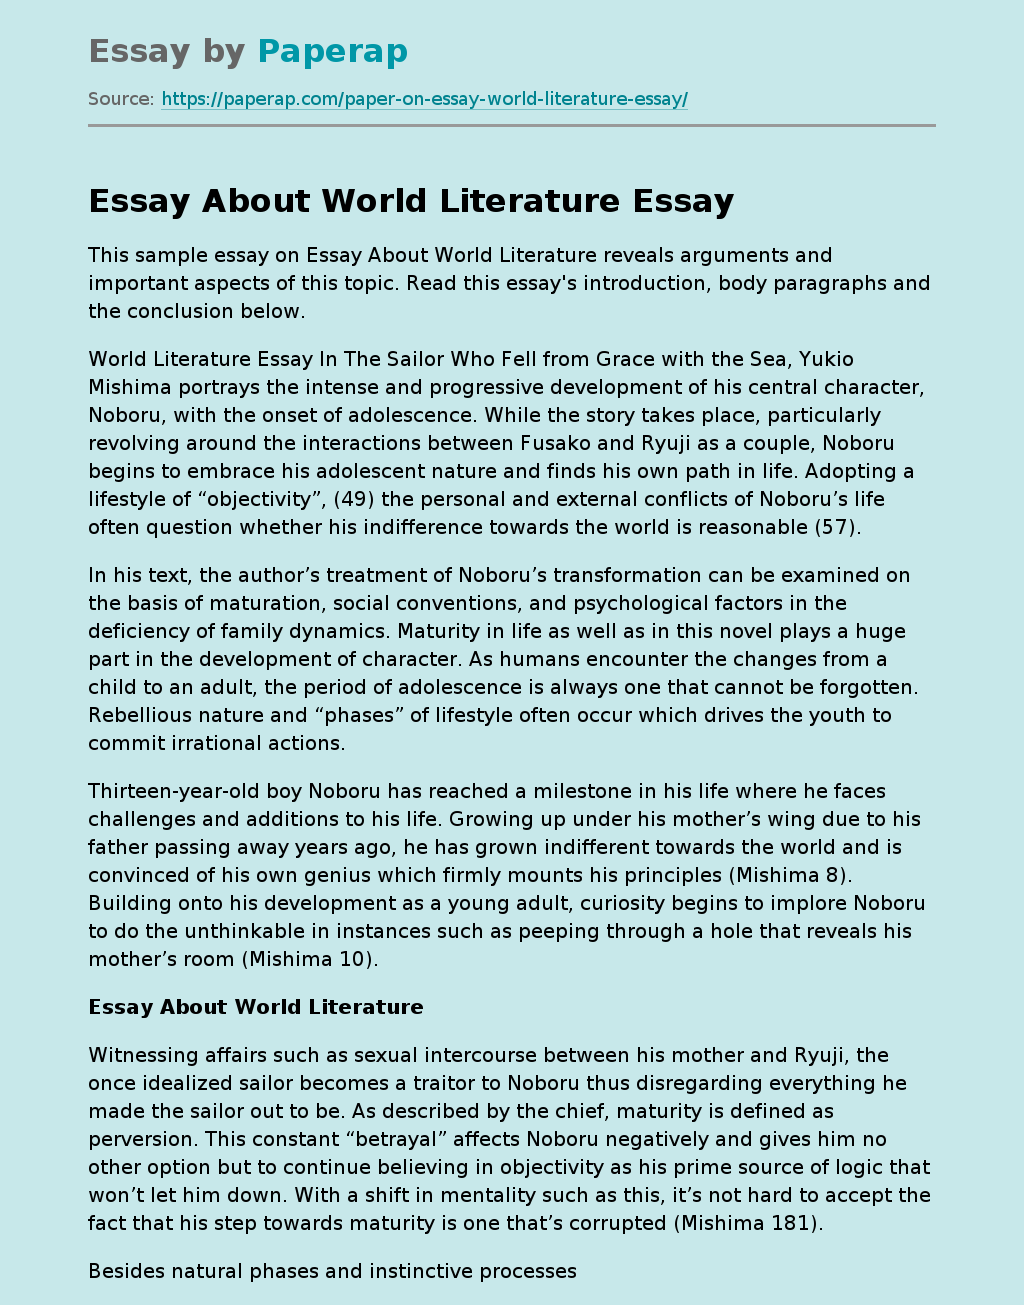 world literature definition essay